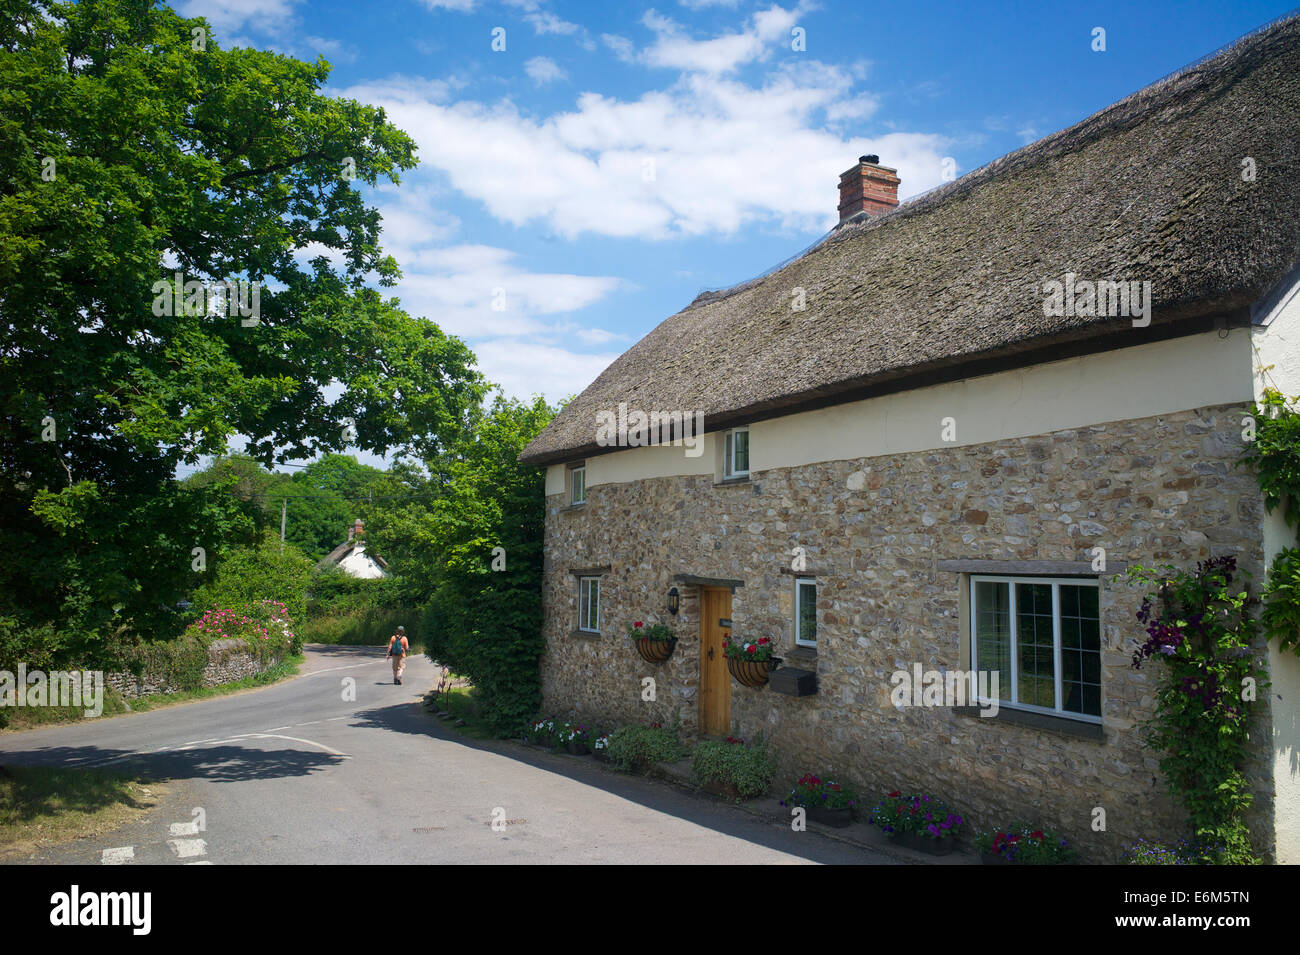 Farway village, East Devon, UK Stock Photo